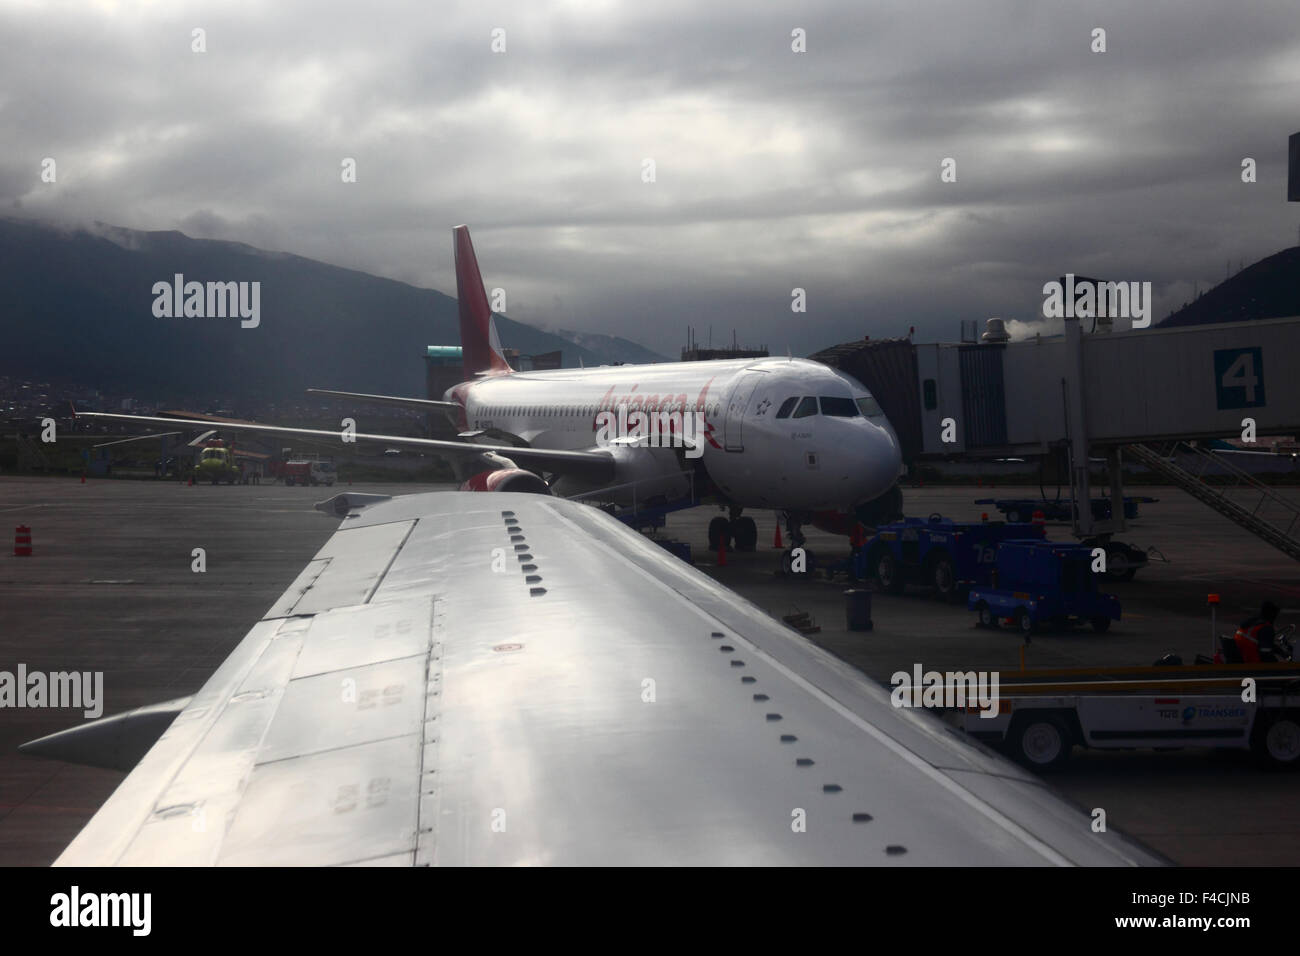 Avianca A320-200 Airbus ha parcheggiato sulla rampa all'esterno dell'edificio del terminal presso l'aeroporto internazionale Alejandro Velasco Astete CUZ, Cusco, Perù Foto Stock